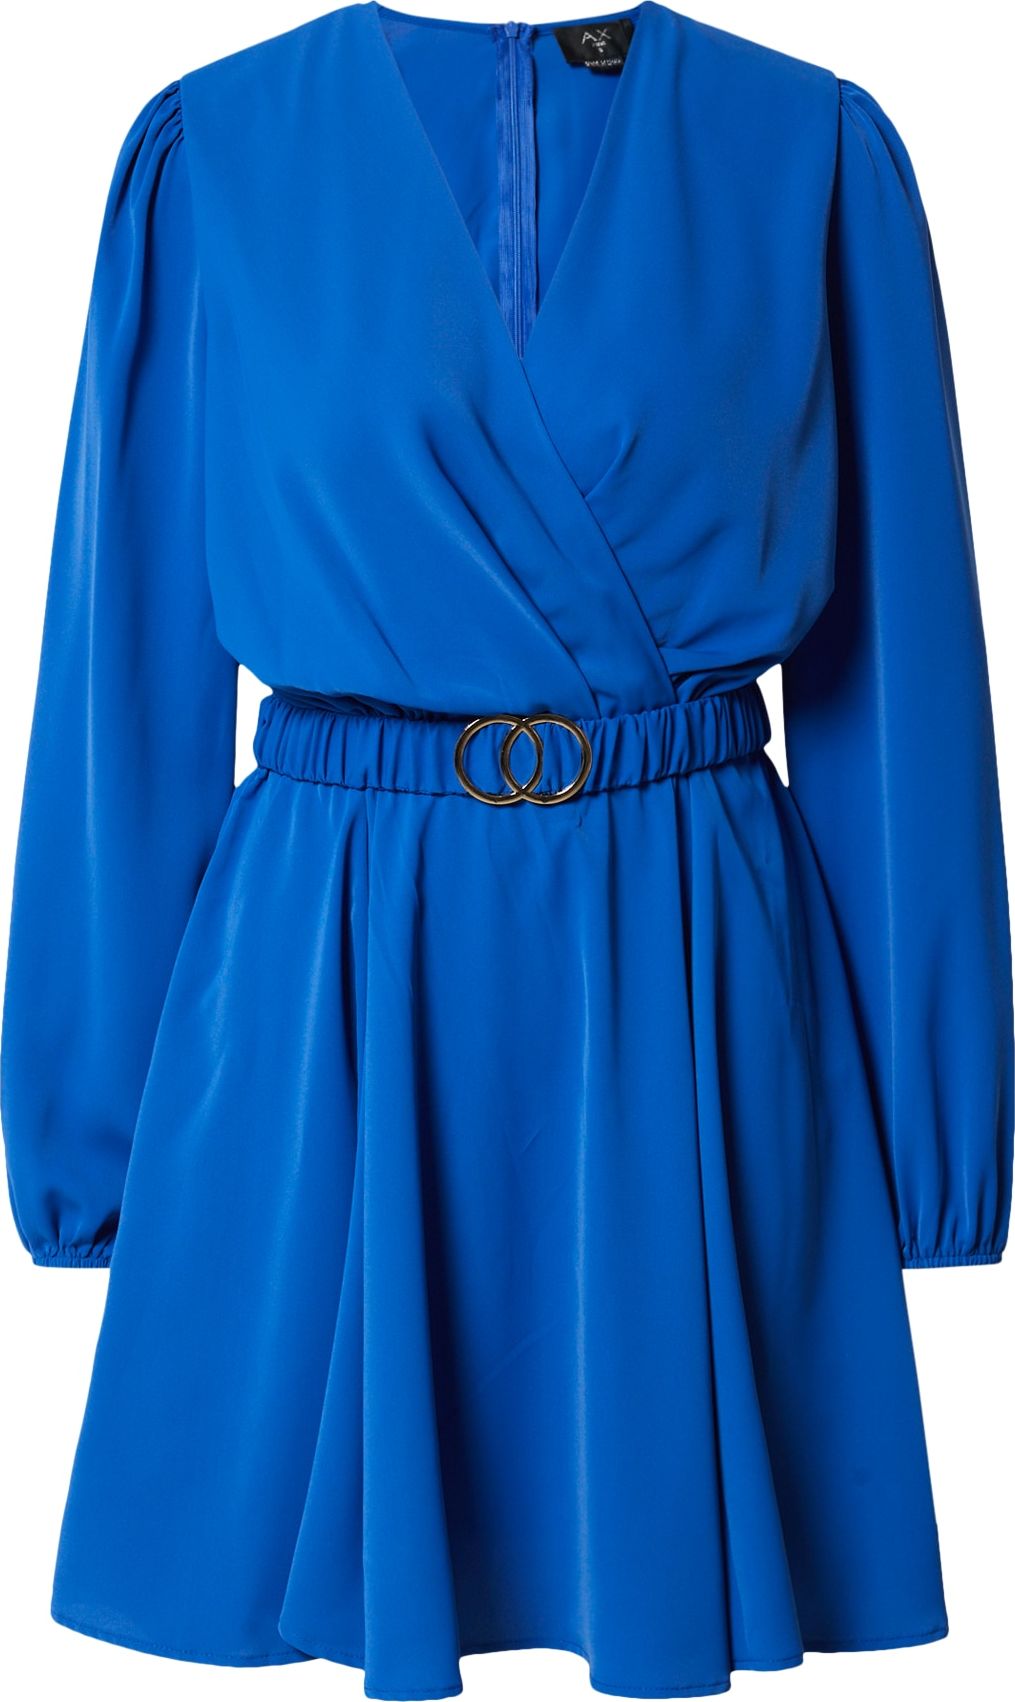 AX Paris Šaty modrá